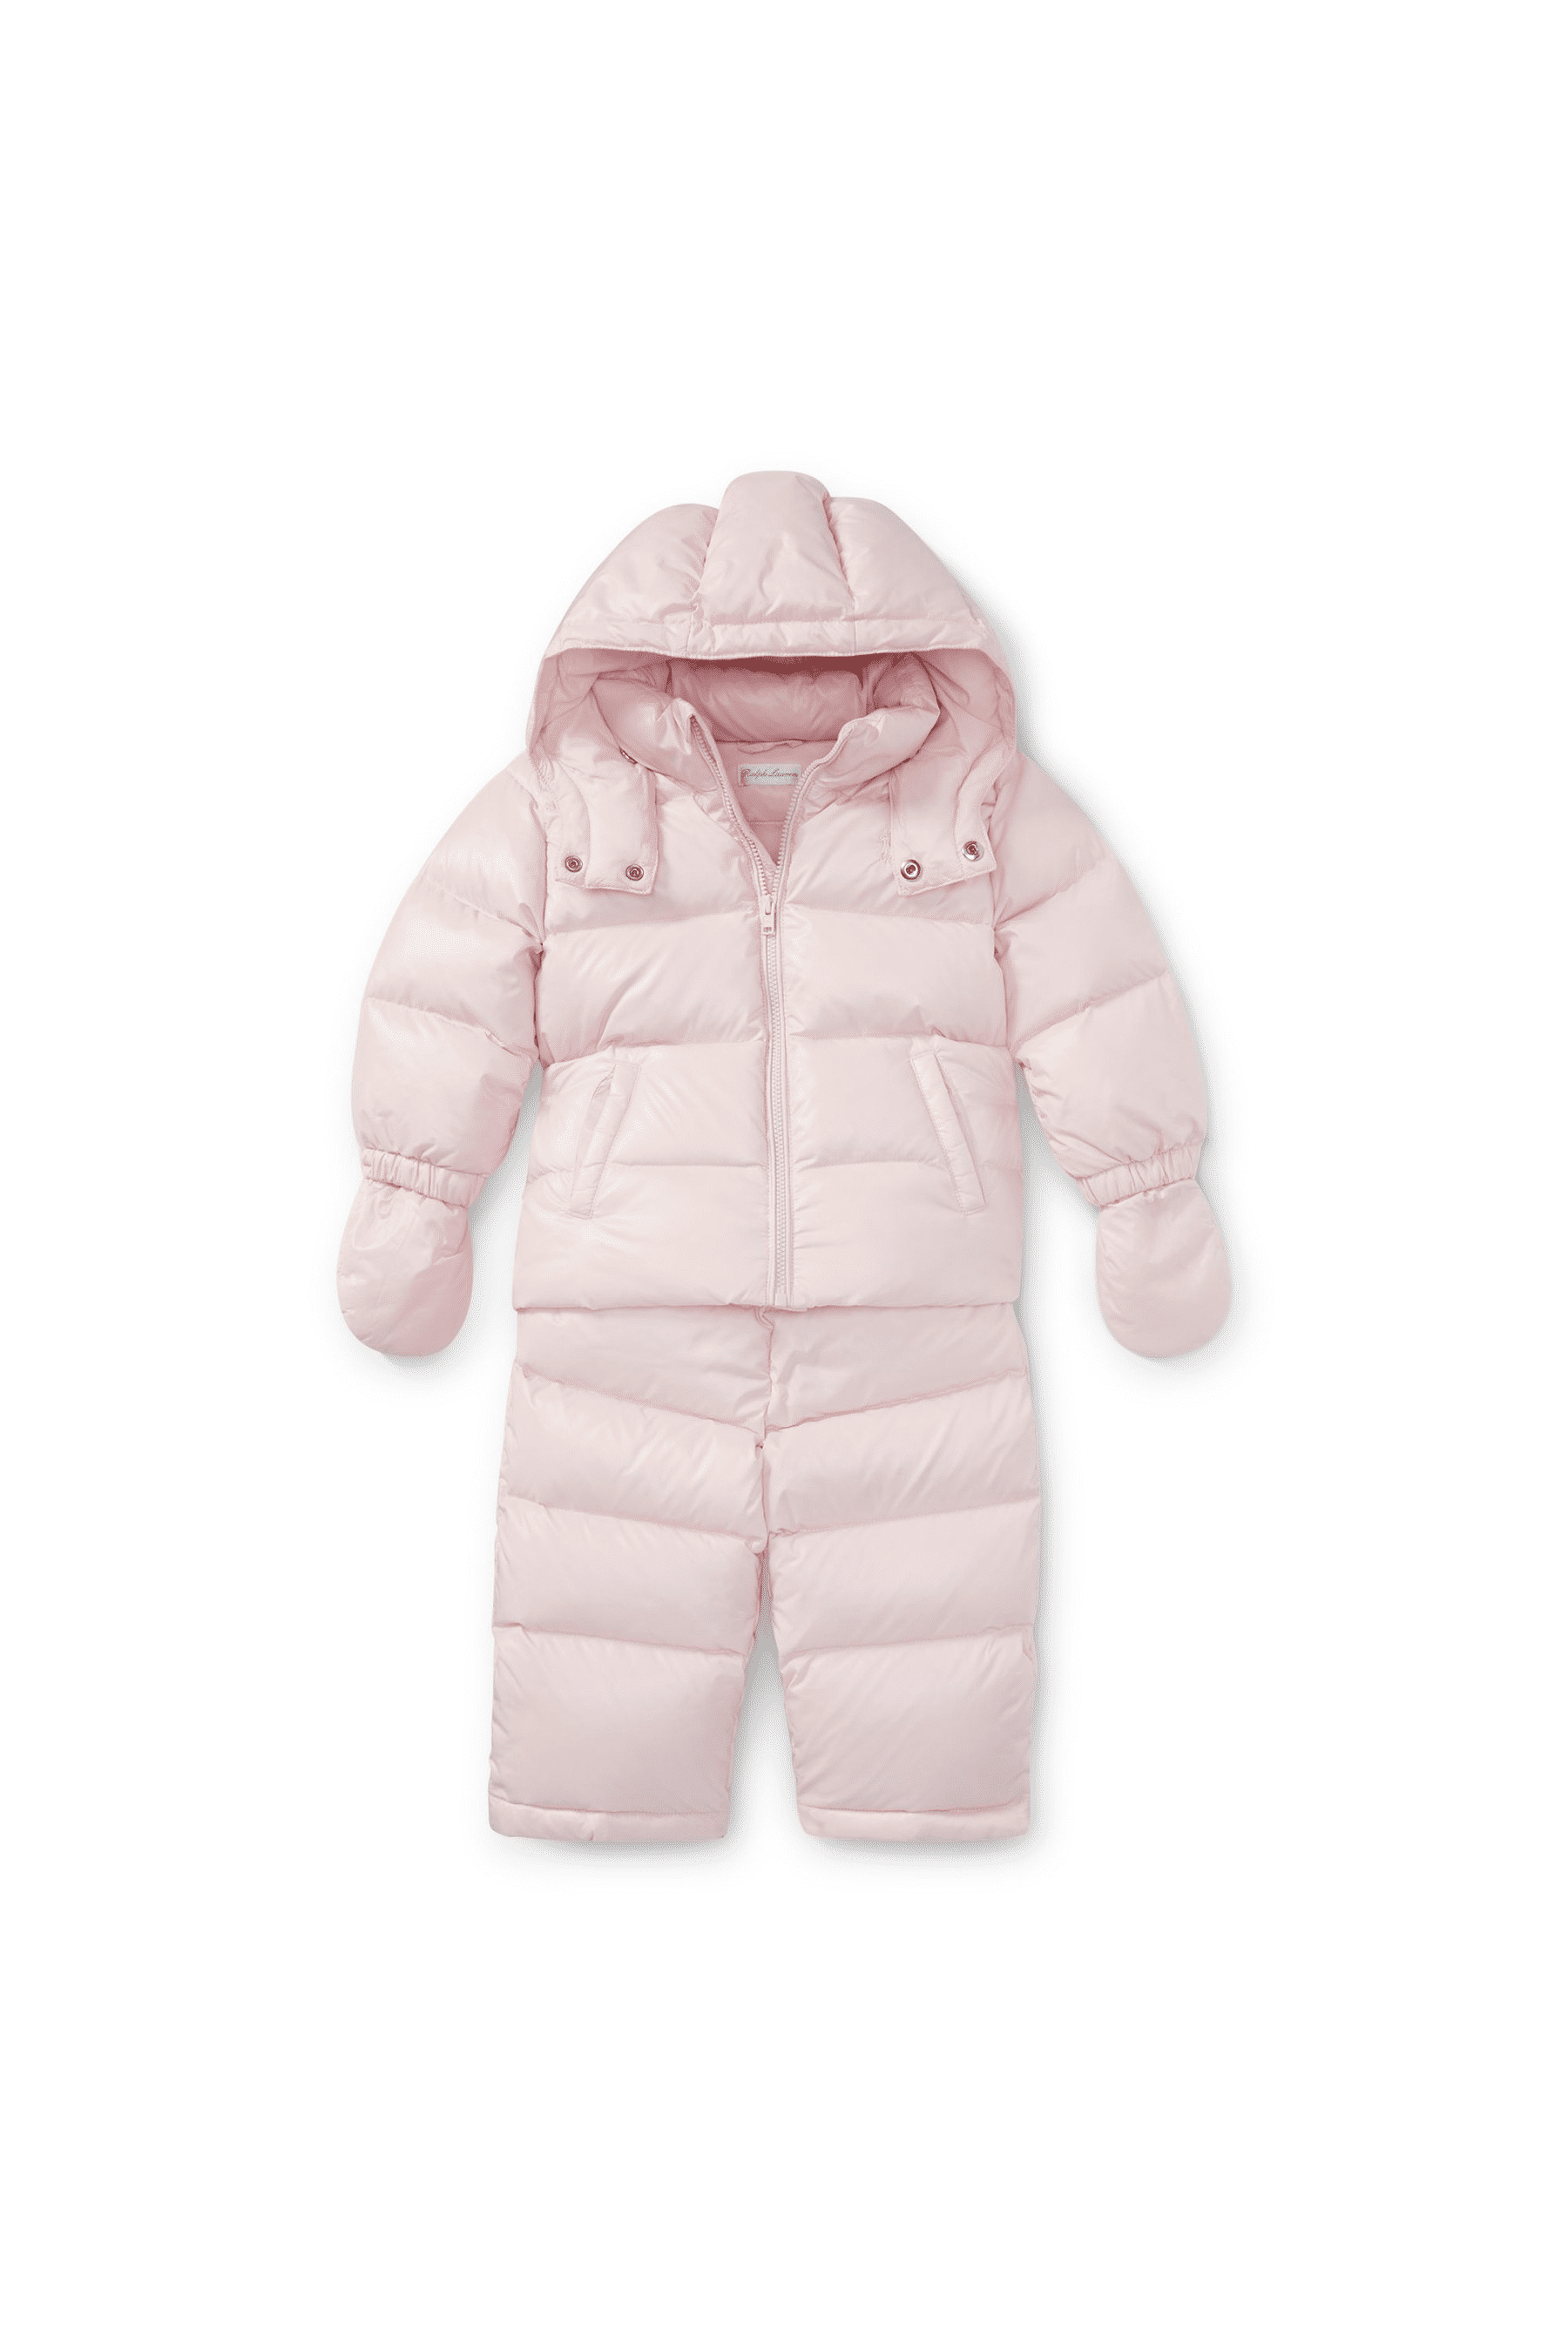 ralph lauren infant snowsuit